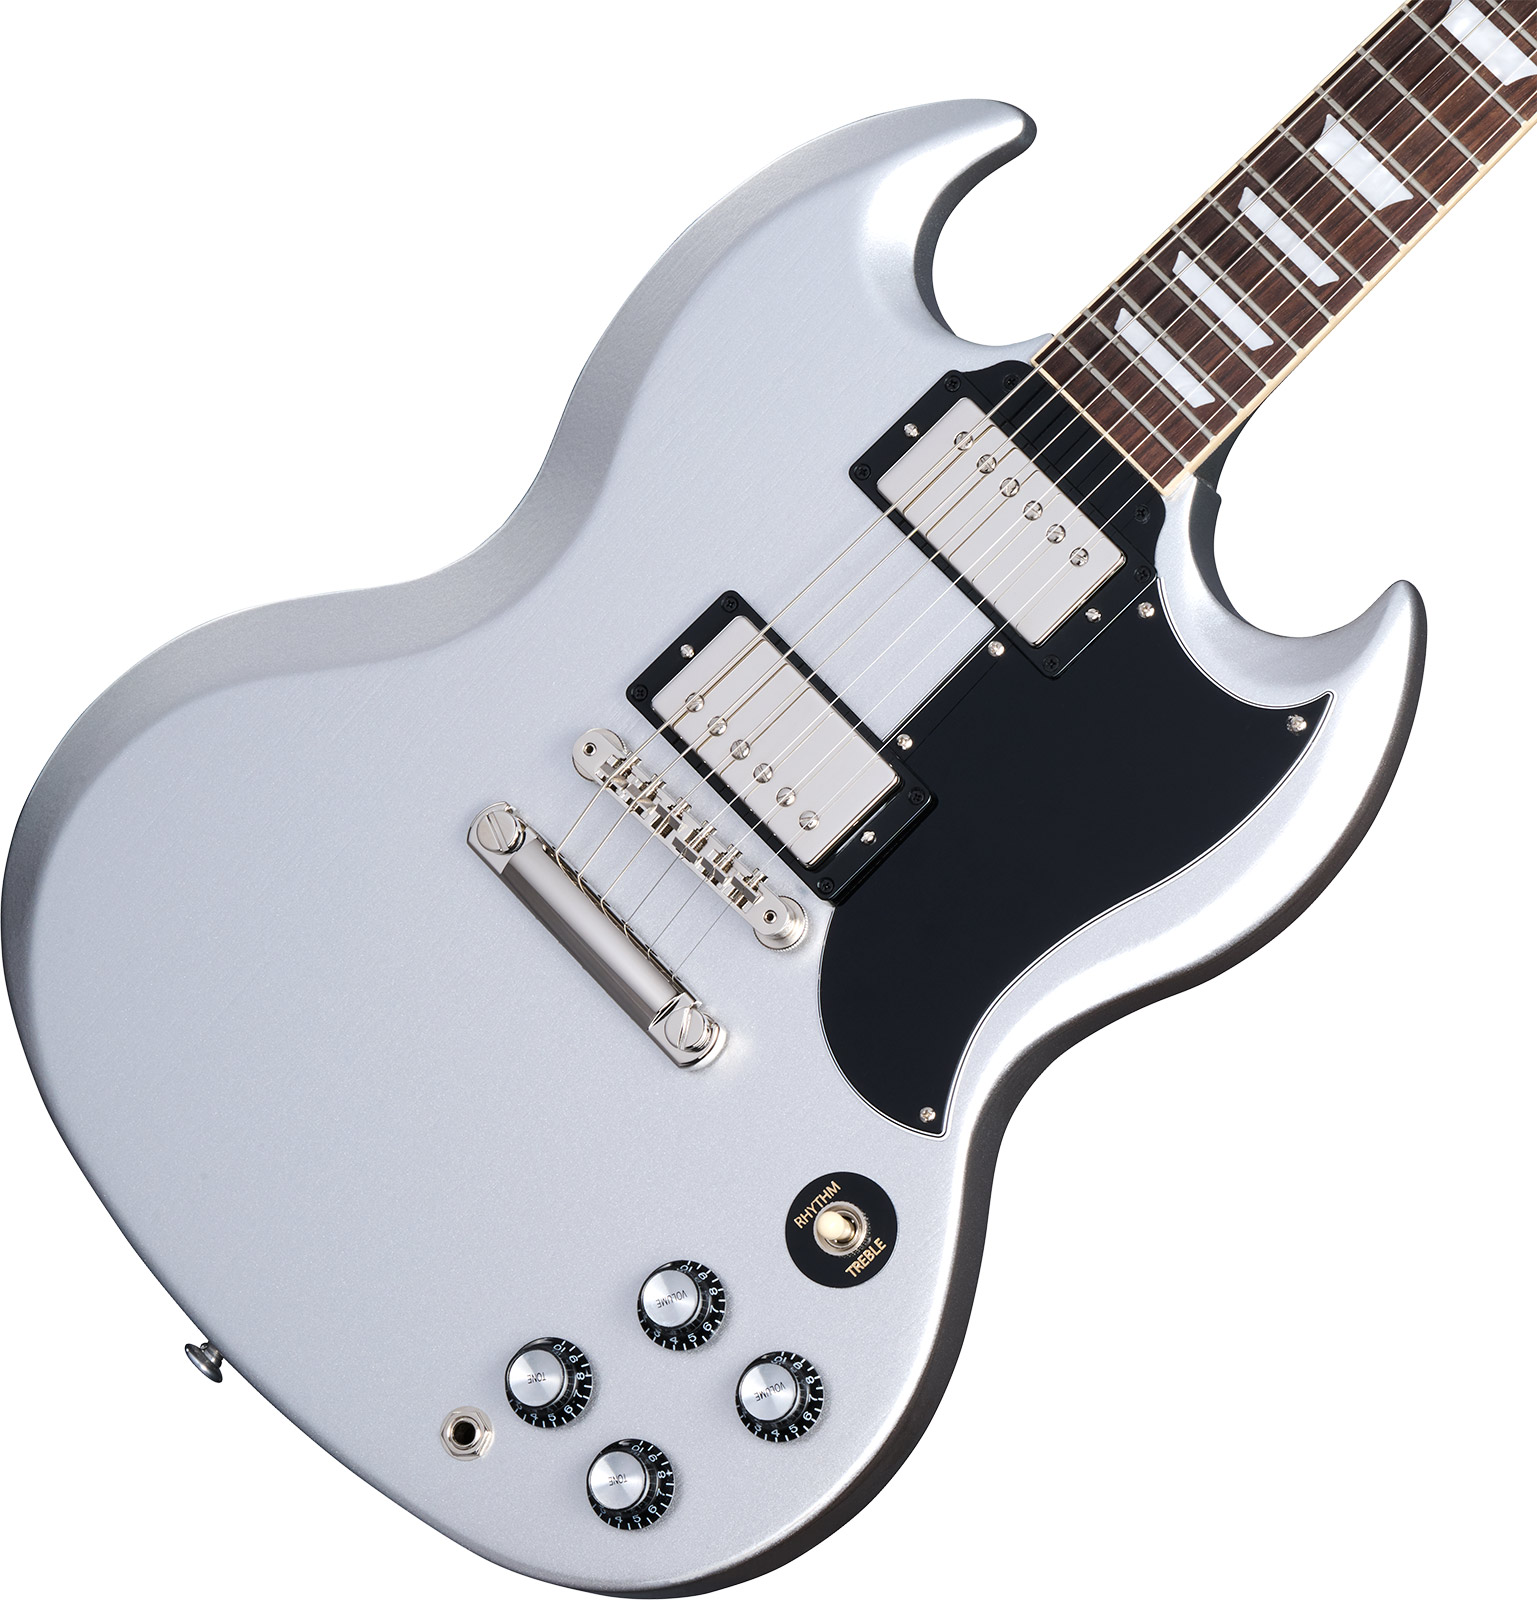 Gibson Sg Standard 1961 Custom Color 2h Ht Rw - Silver Mist - Double Cut E-Gitarre - Variation 3